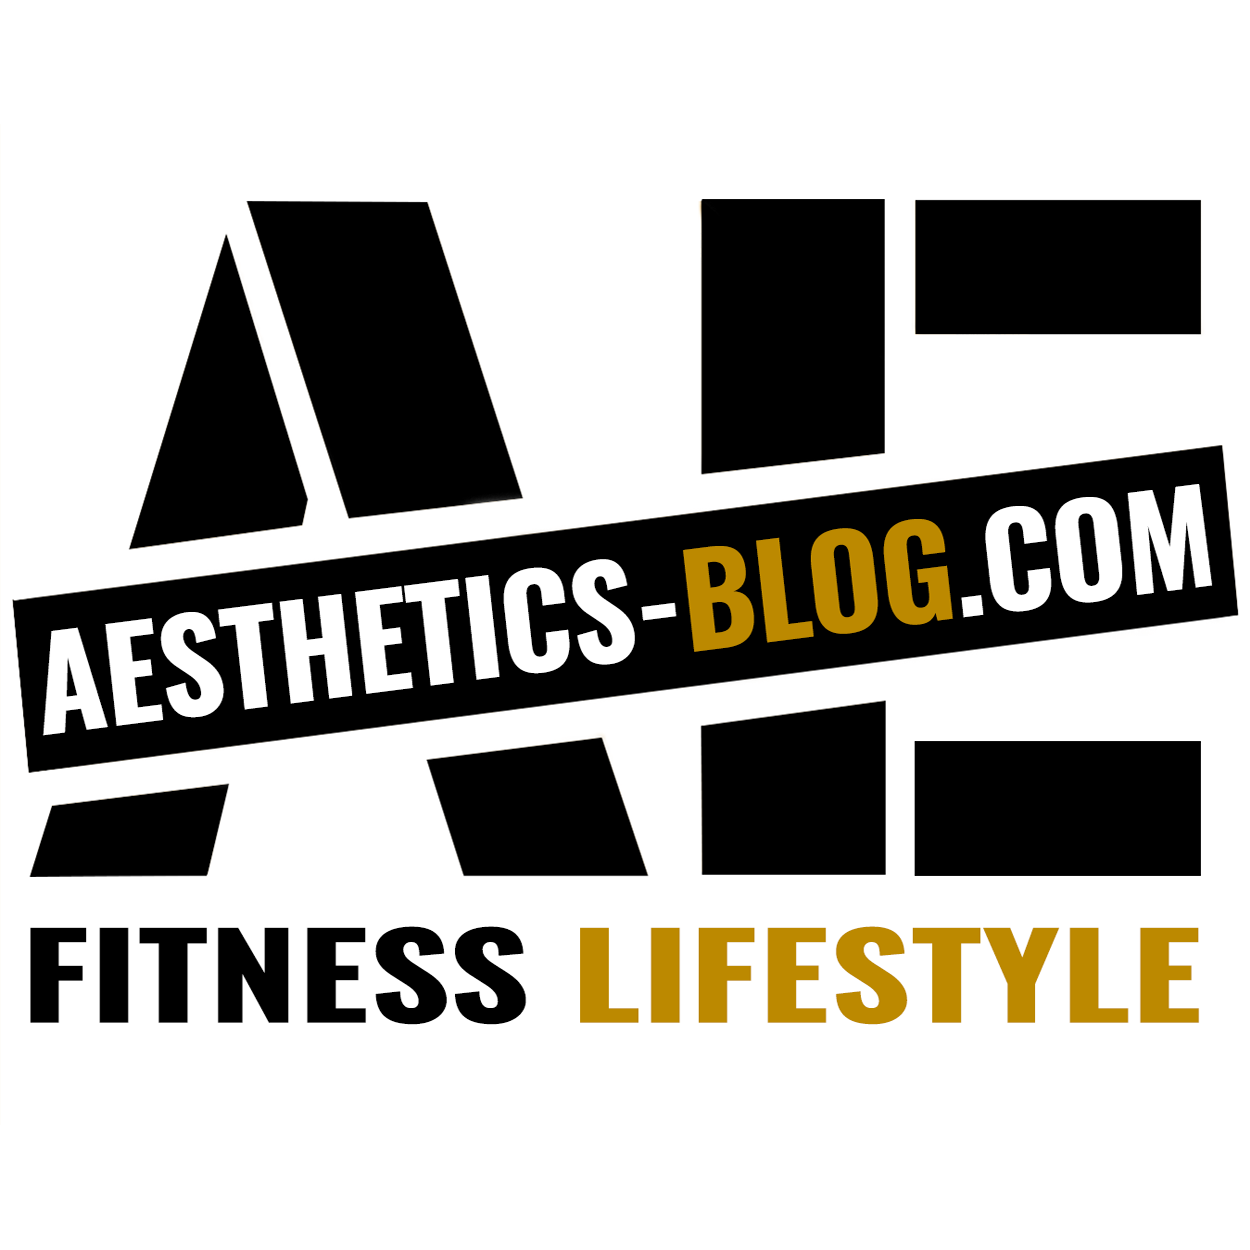 (c) Aesthetics-blog.com